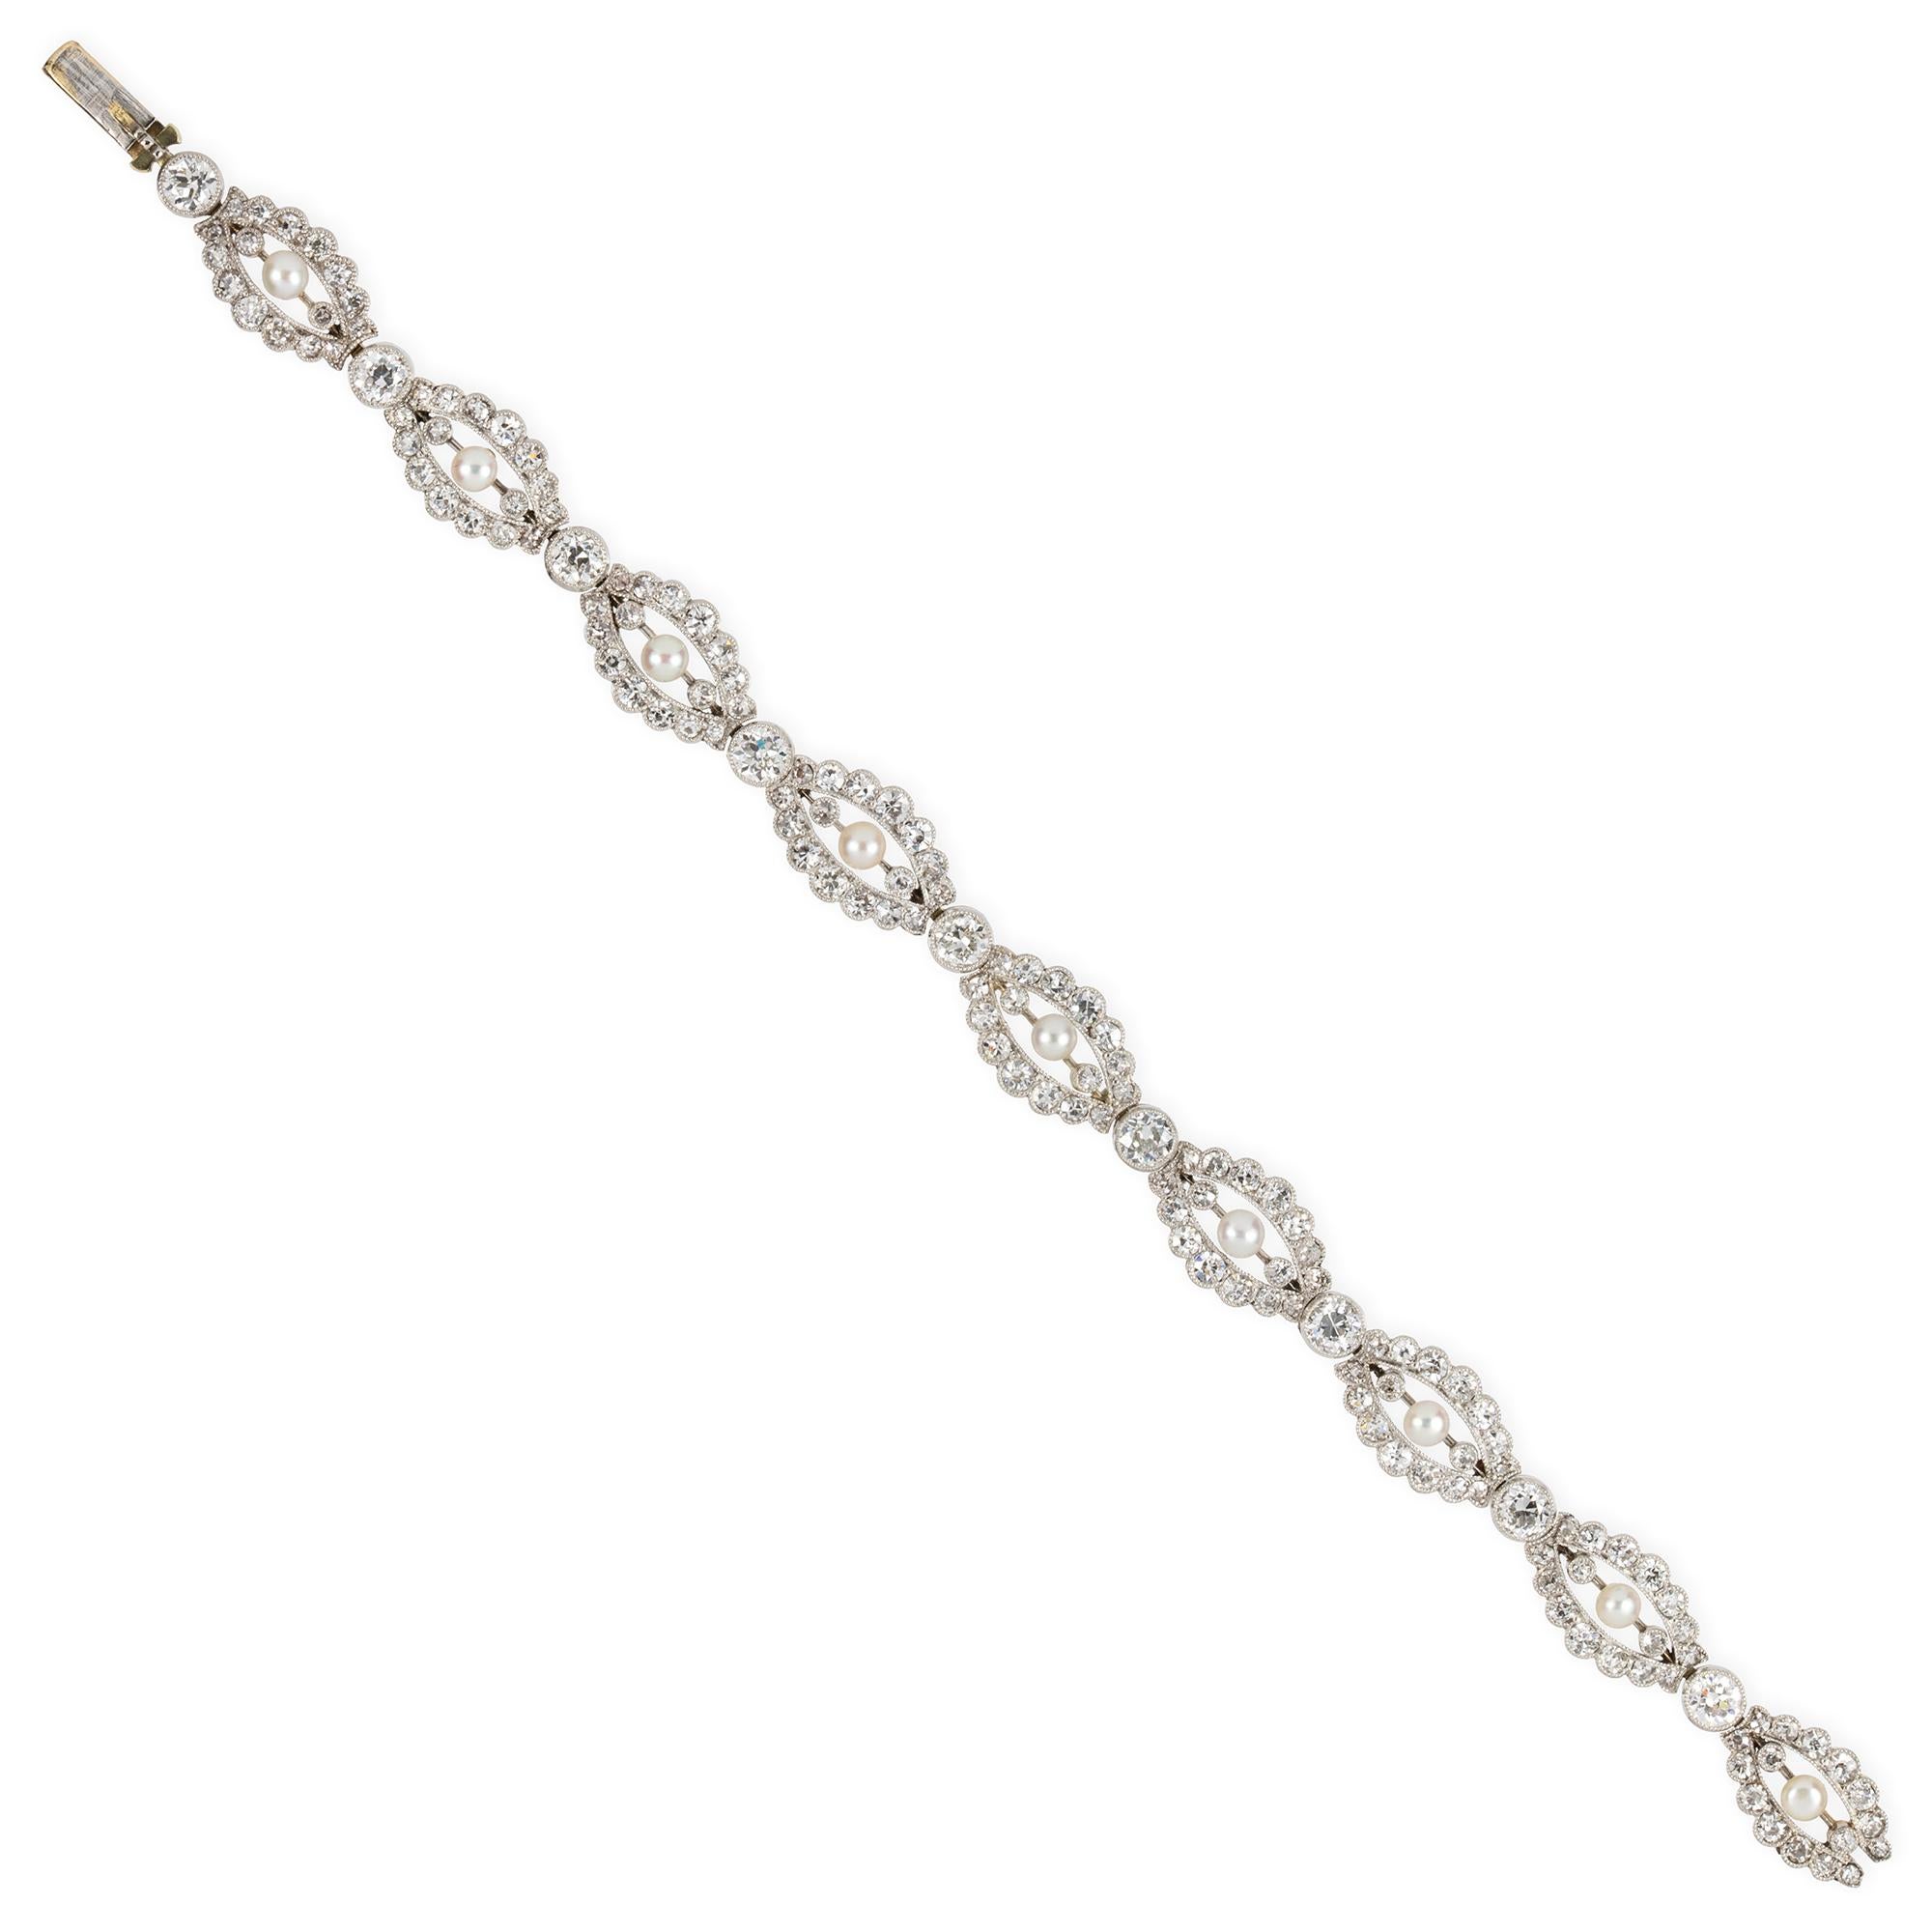 Ein edwardianisches Perlen- und Diamantenarmband, bestehend aus neun marquiseförmigen, diamantbesetzten, durchbrochenen Gliedern, jedes in der Mitte mit einer runden Naturperle zwischen zwei Diamanten im Altschliff, verbunden mit neun Diamanten im